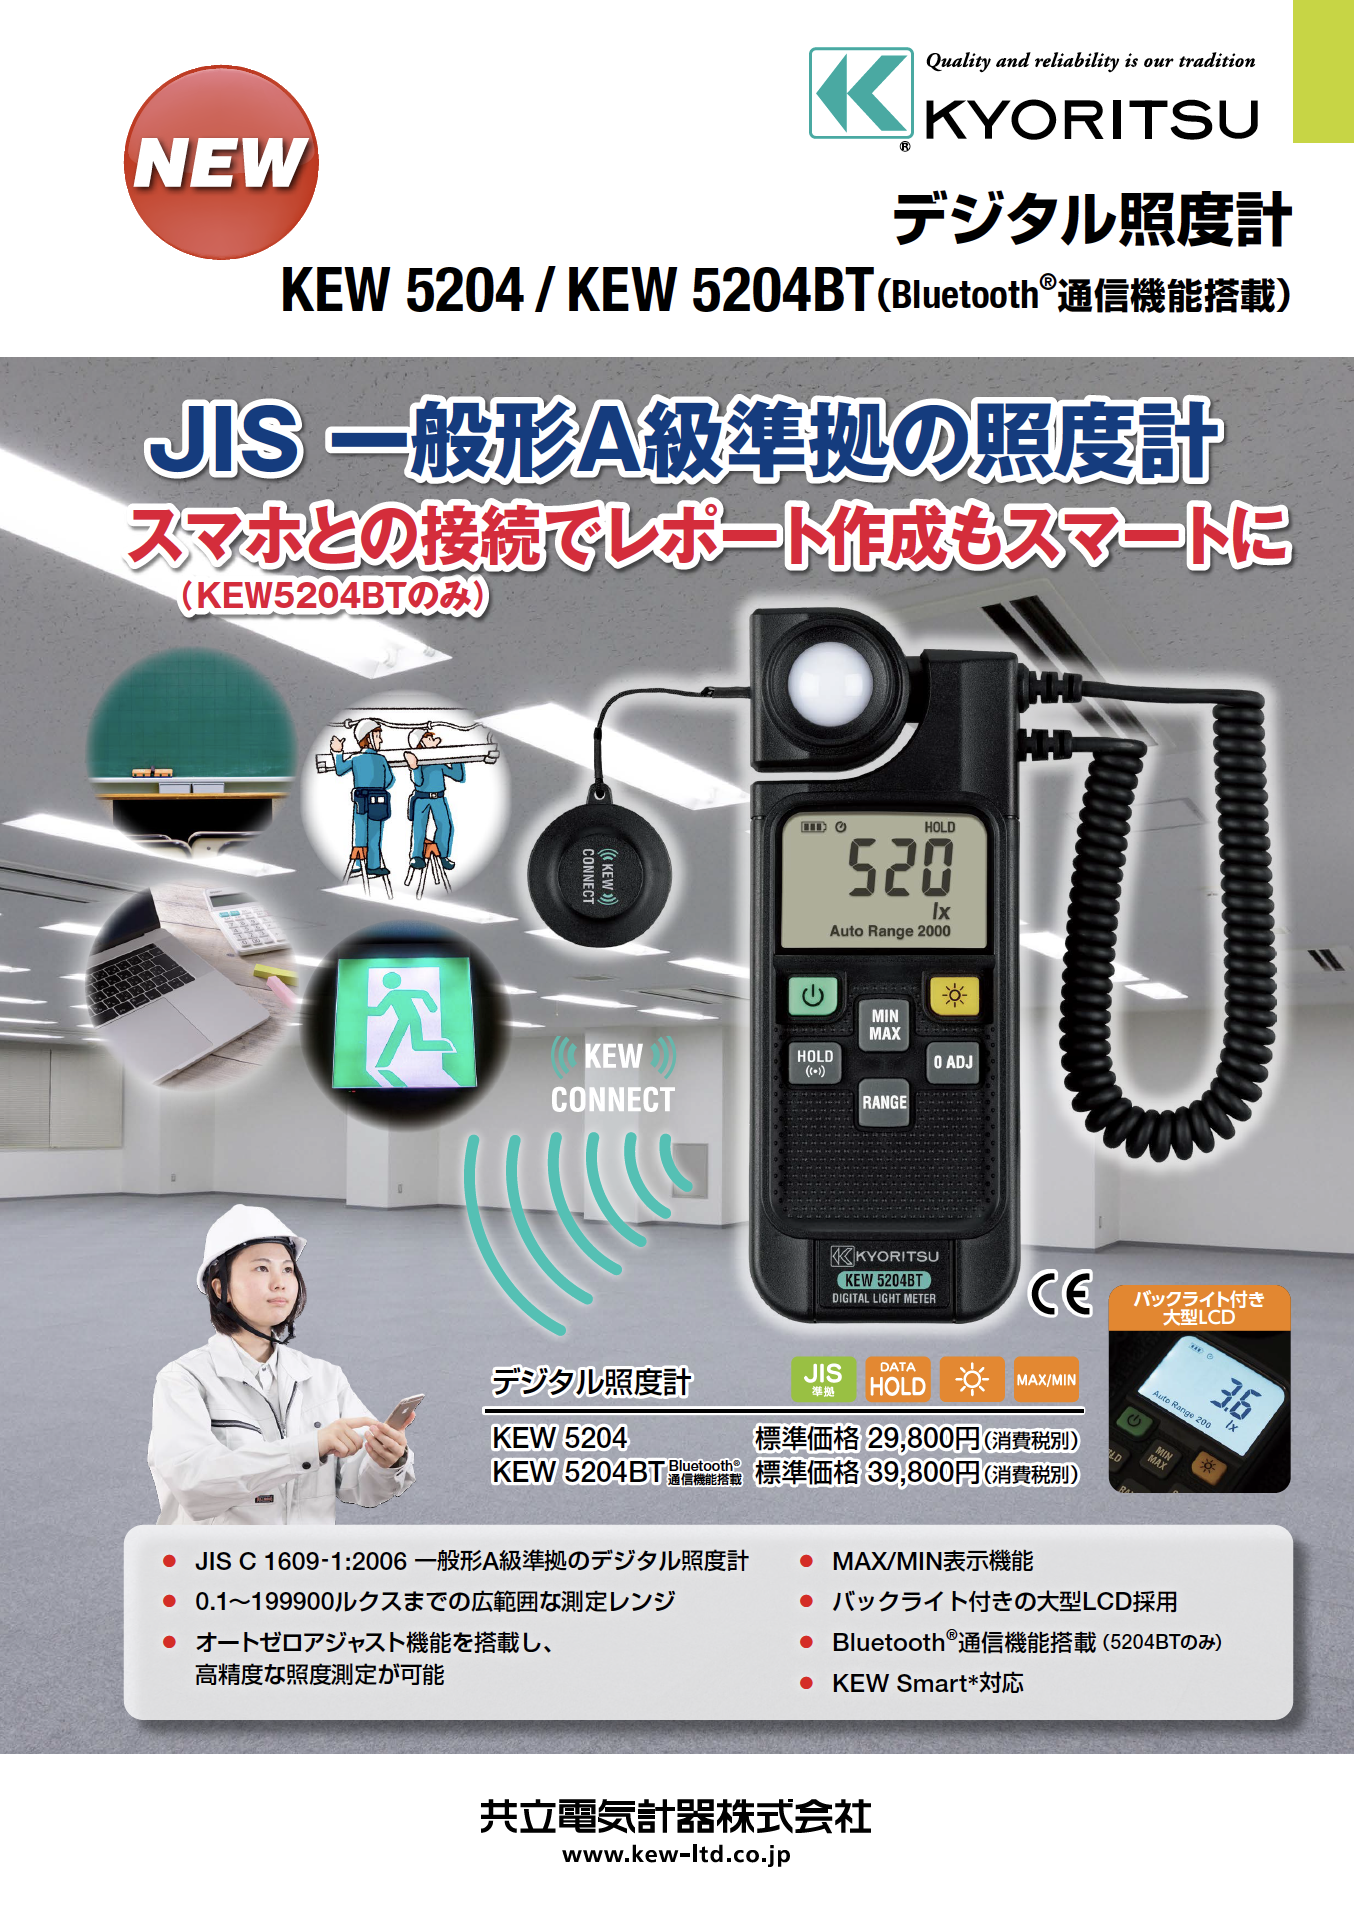 【共立電気計器】JIS一般形A級準拠の照度計『デジタル照度計 KEW 5204 / KEW 5204BT（Bluetooth®通信機能搭載）』の画像